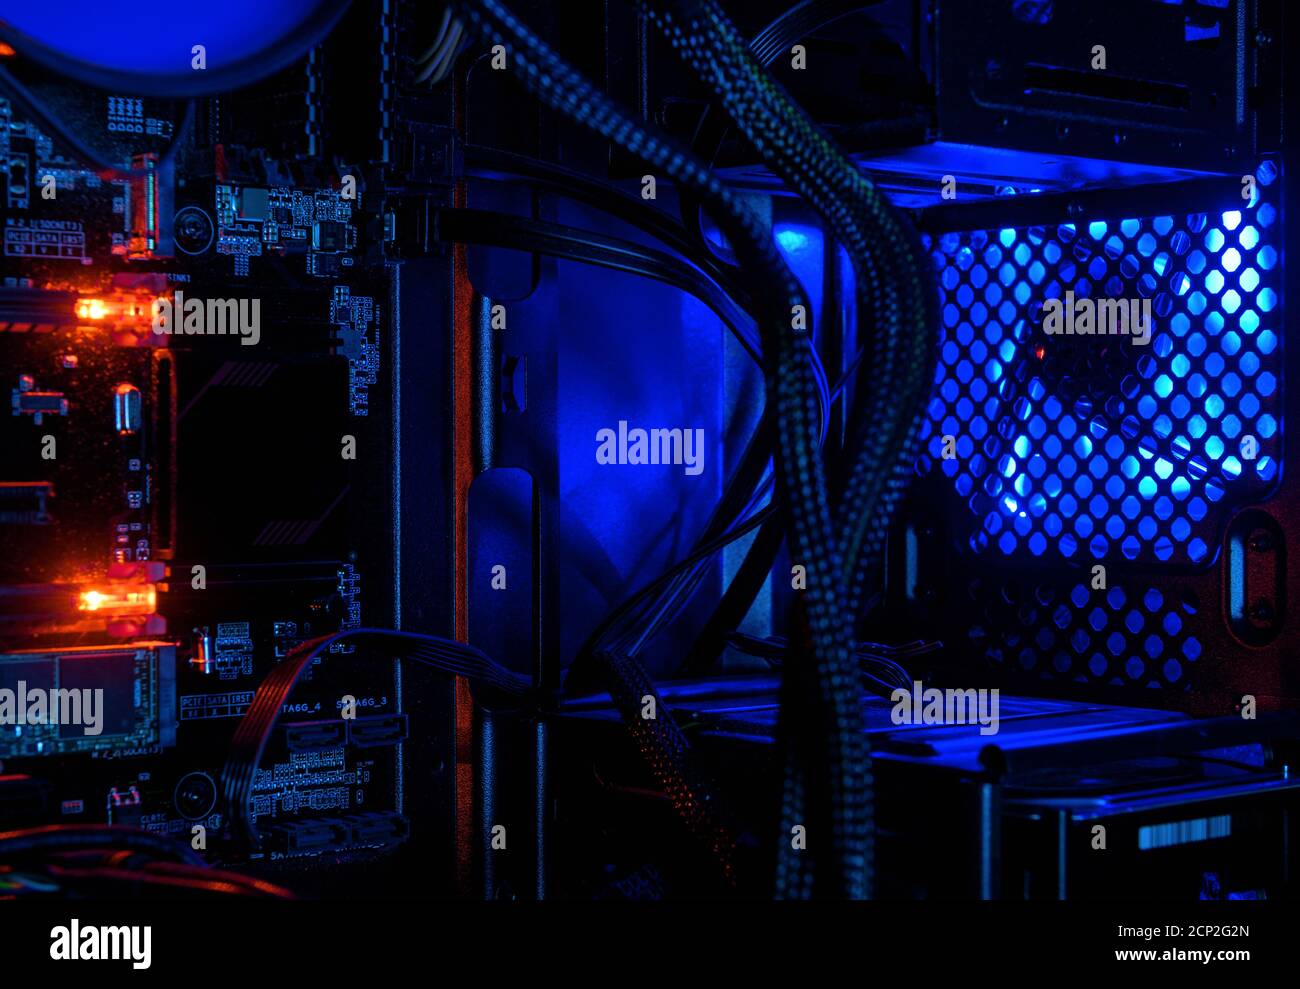 Computer beleuchtet durch interne LED RGB-Leuchten, Hardware im offenen  Hochleistungs-Desktop-PC. Der offene Turm von Gaming-Computer für Tapeten.  Co Stockfotografie - Alamy